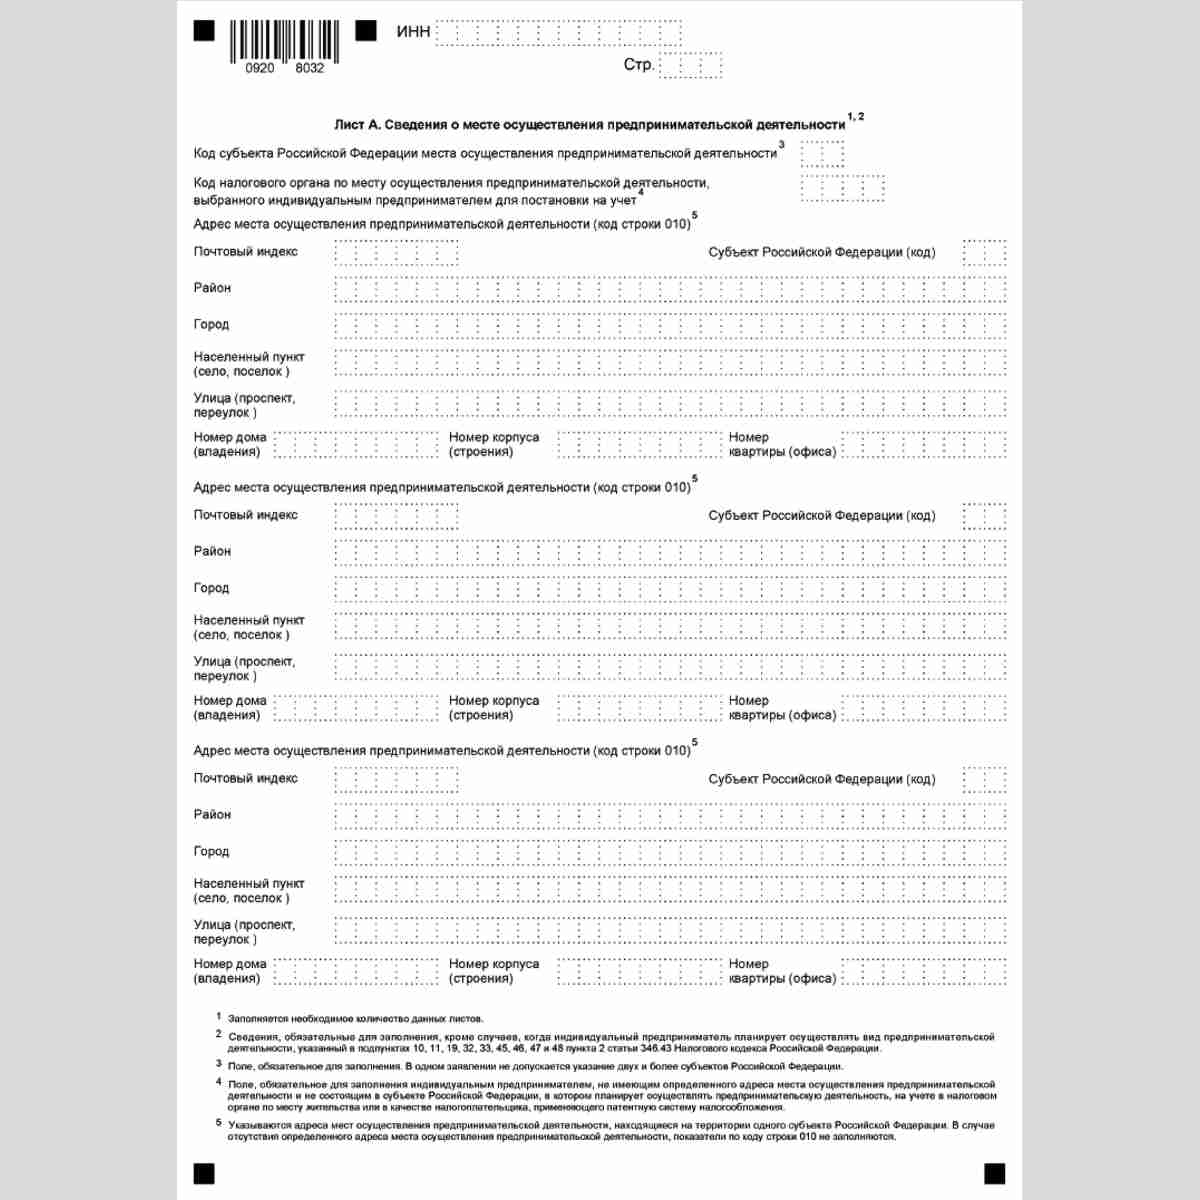 Форма КНД 1150010 "Заявление на получение патента" (Форма 26.5-1). Лист А